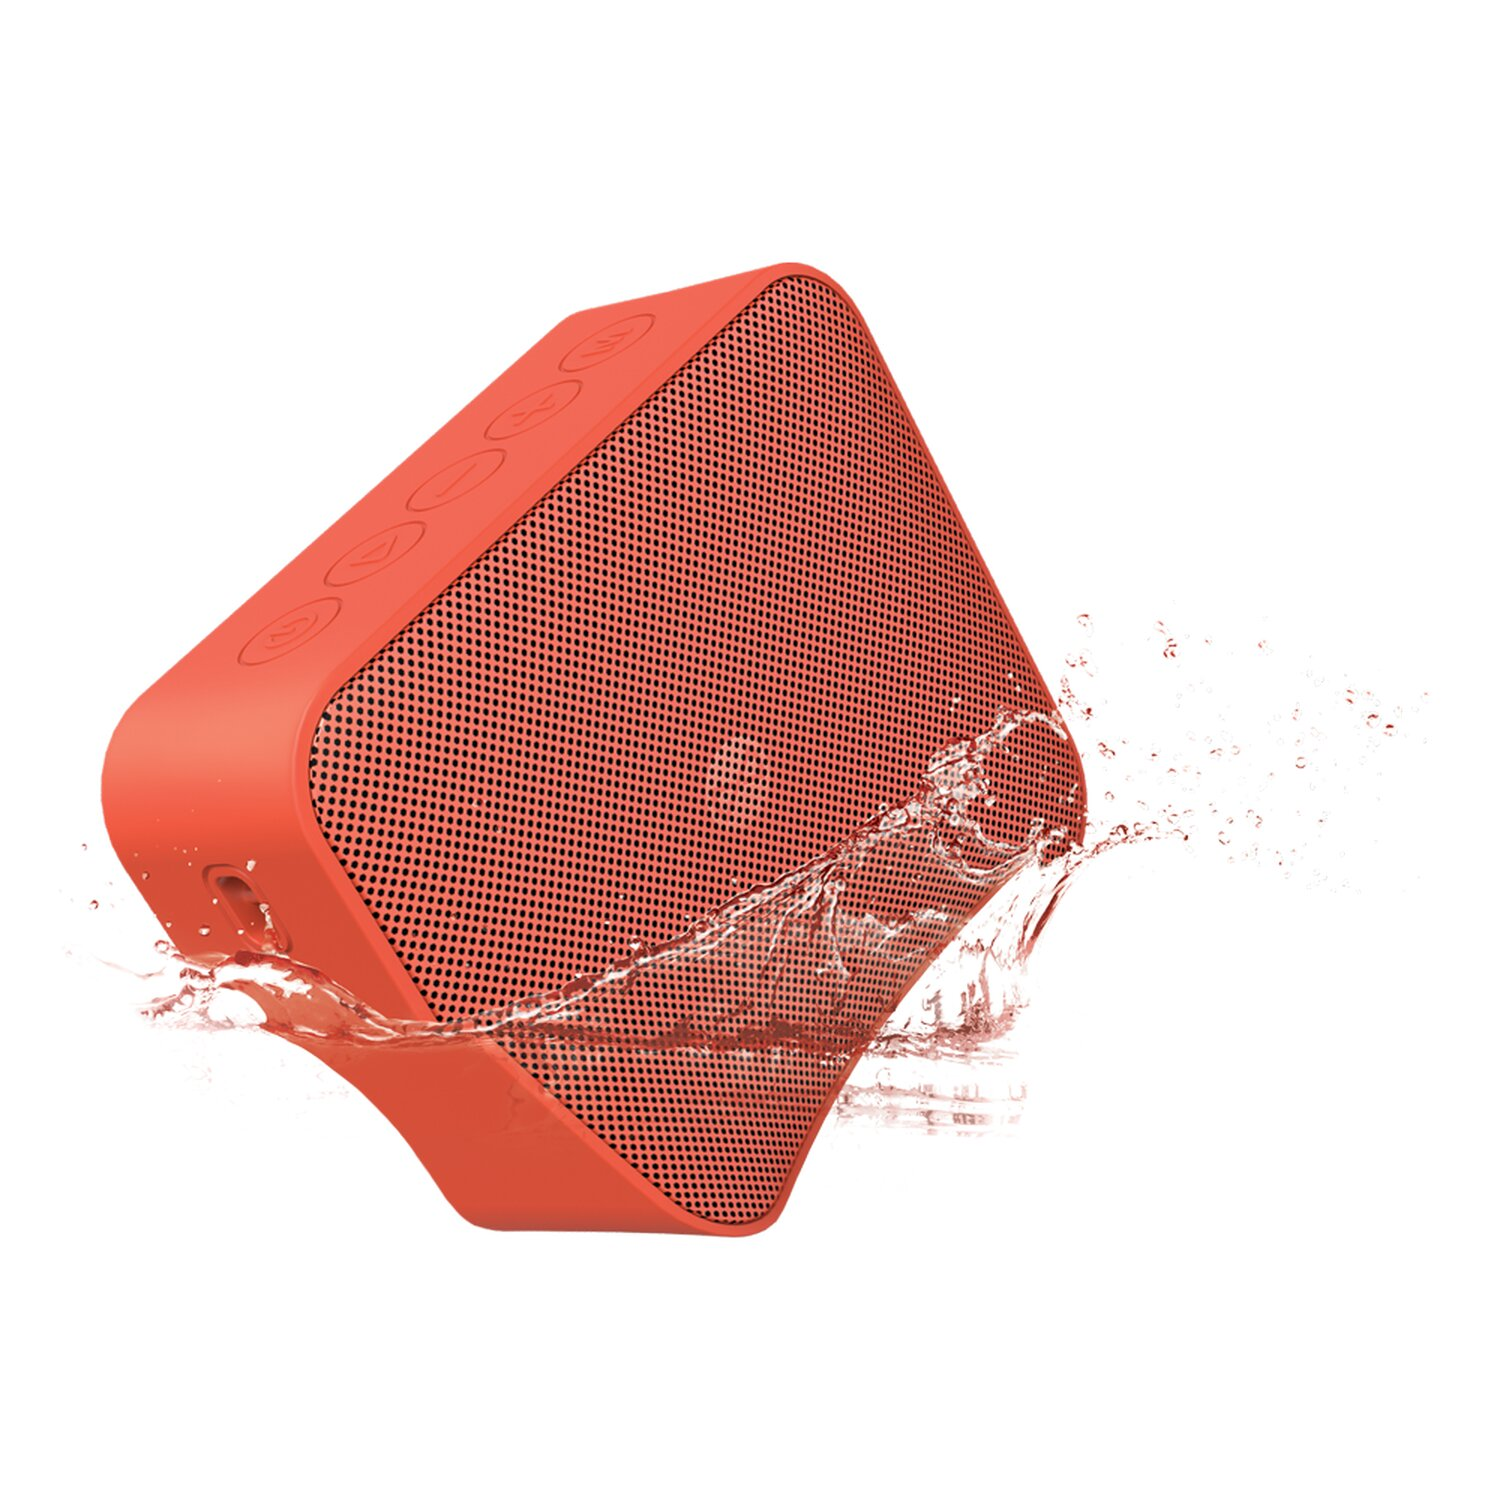 FOREVER BS-800 BLIX Lautsprecher, Wasserfest Rot, Bluetooth